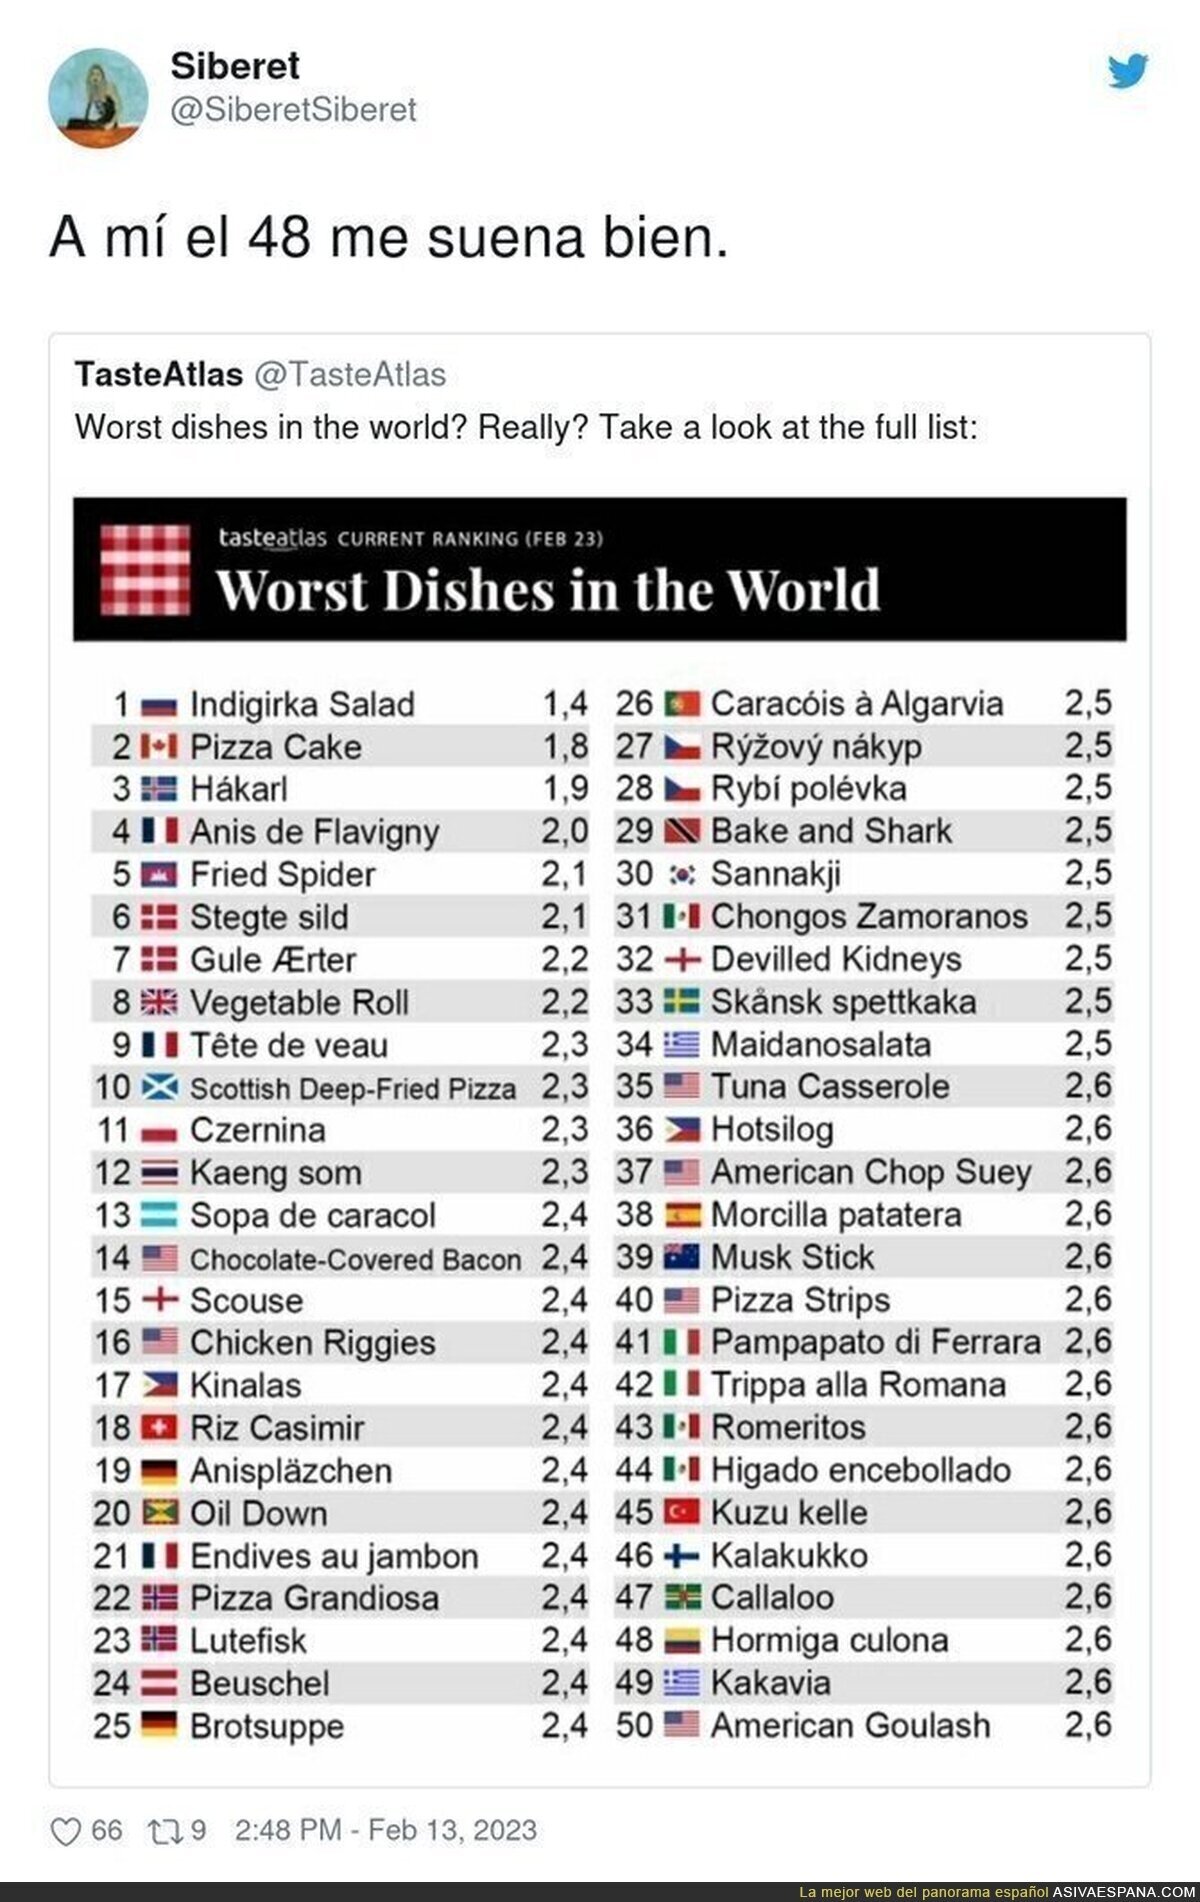 Los peores platos del Mundo